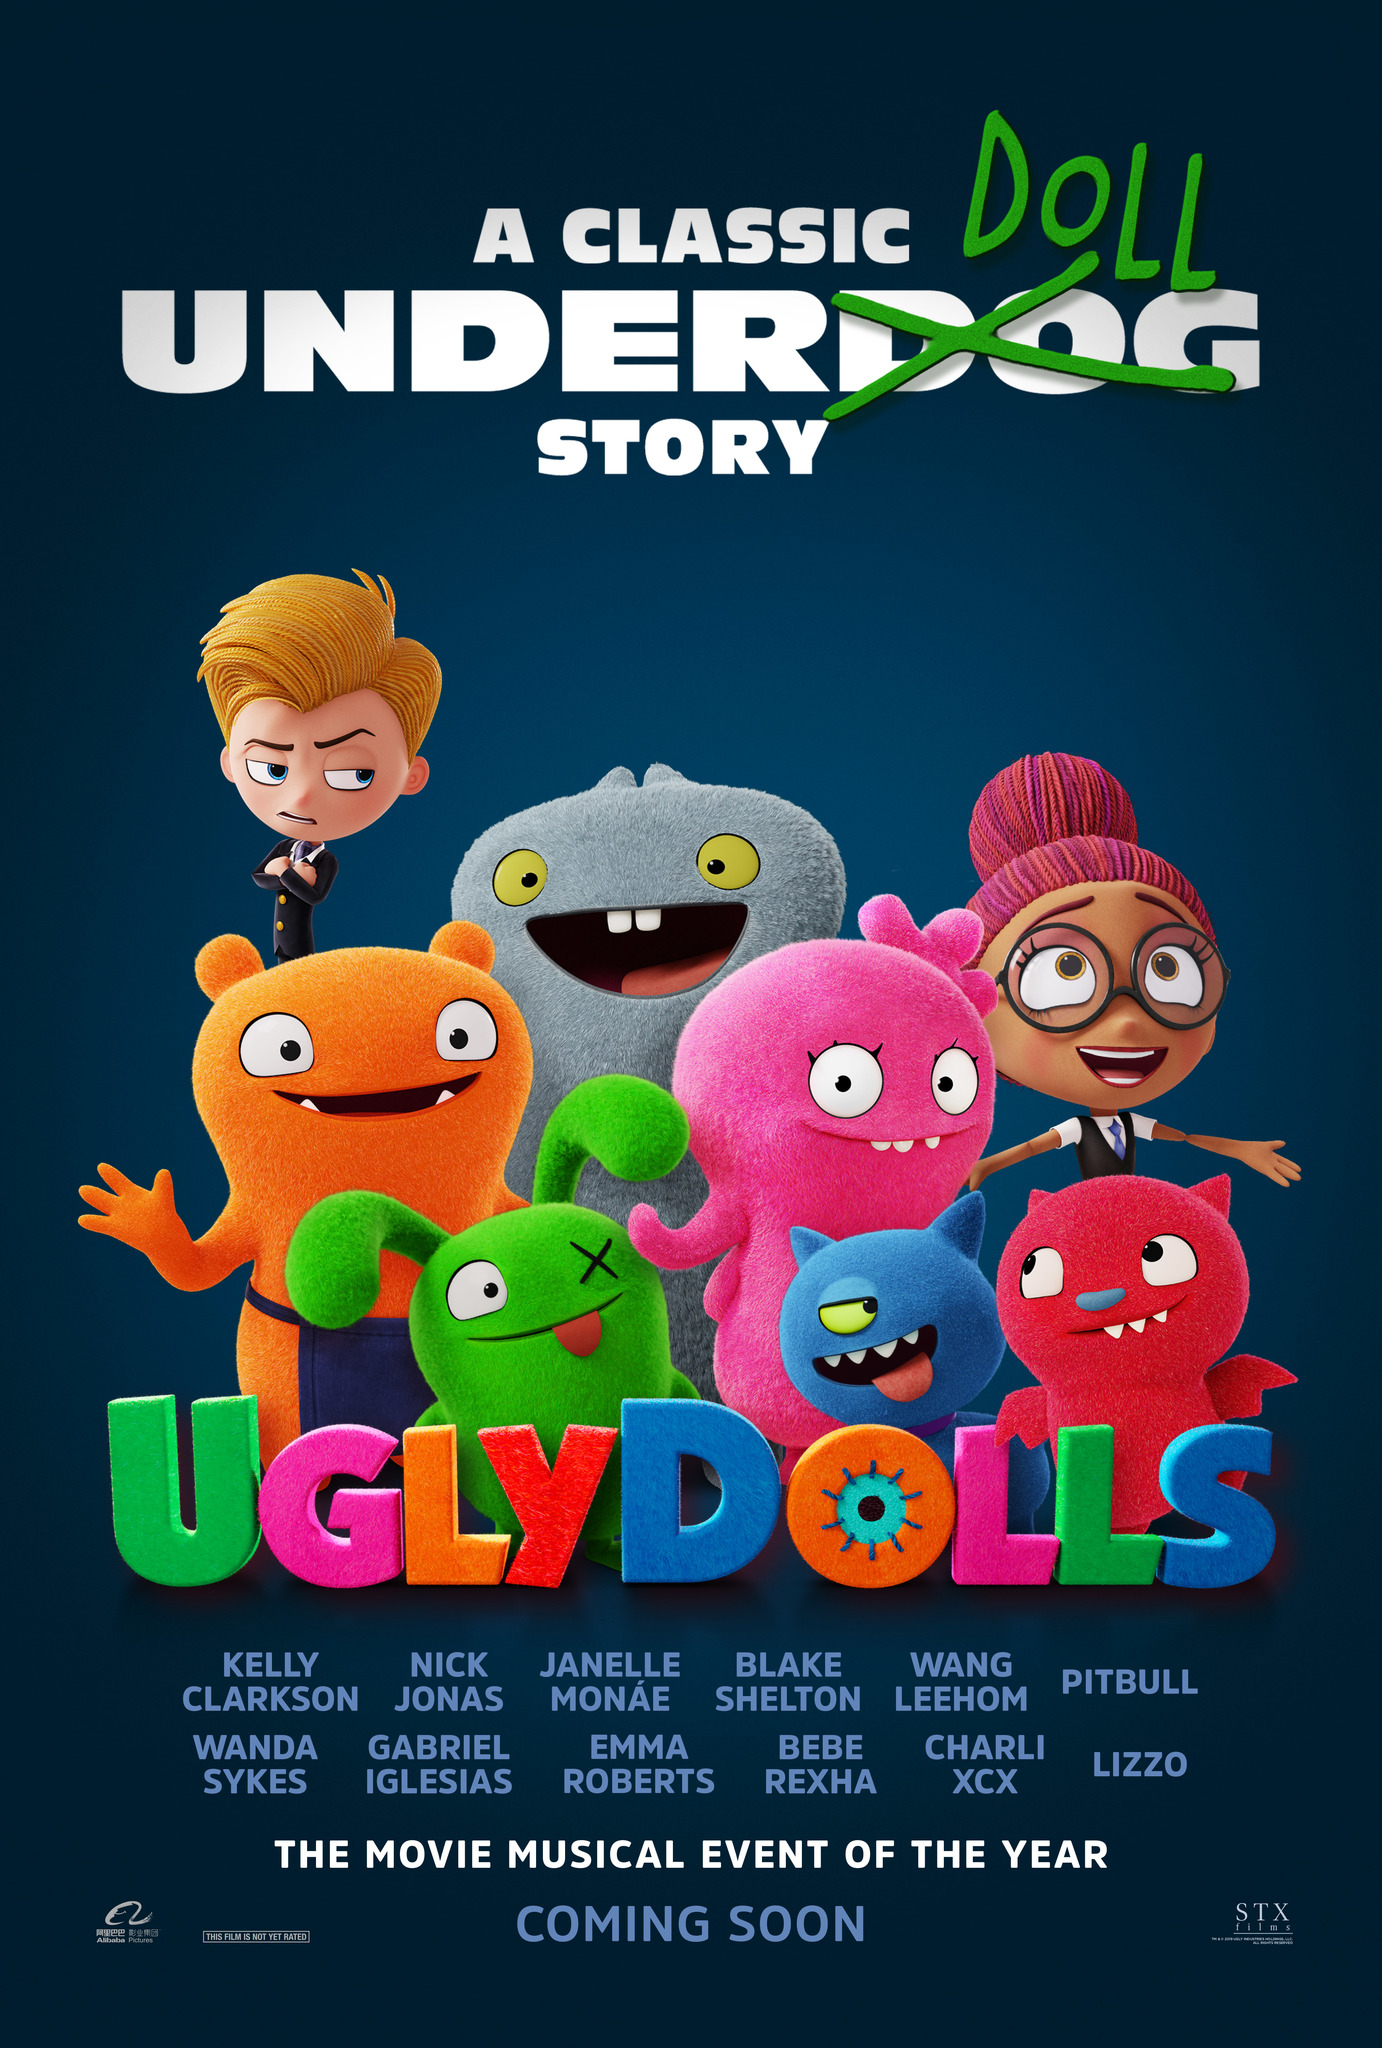 ดูหนังออนไลน์ฟรี UglyDolls (2019) ผจญแดนตุ๊กตามหัศจรรย์ หนังเต็มเรื่อง หนังมาสเตอร์ ดูหนังHD ดูหนังออนไลน์ ดูหนังใหม่